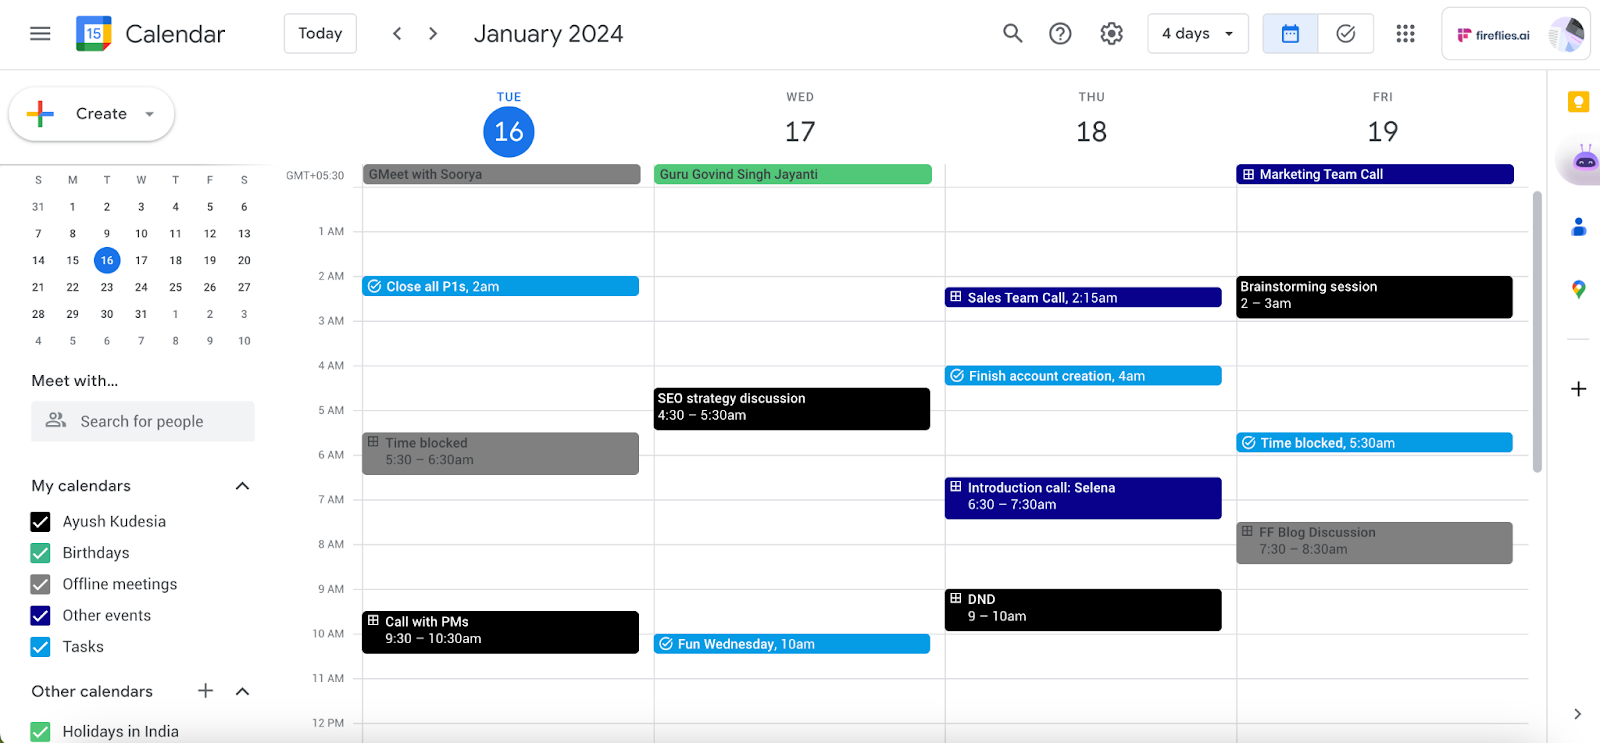 Google Calendar color scheme ideas - Corporate Bold Hues